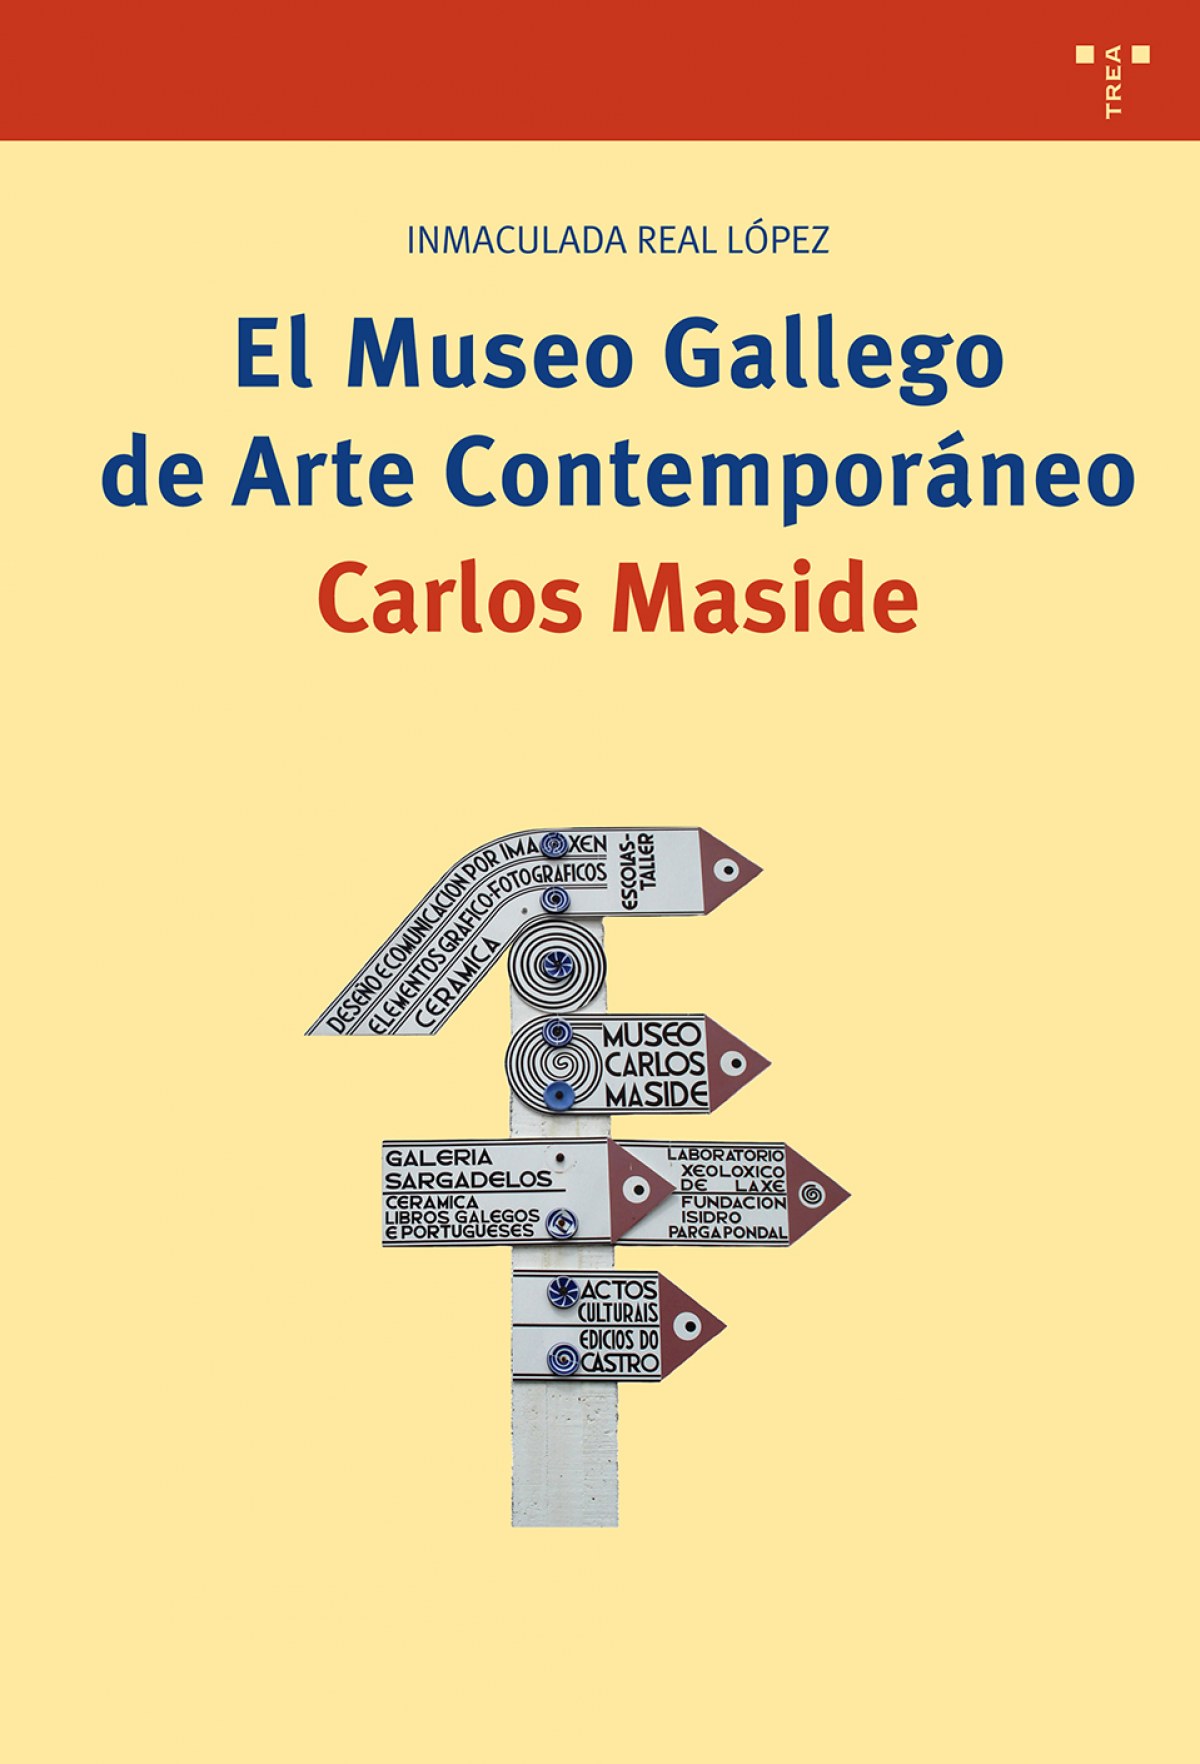 El museo gallego de arte contemporÁneo carlos maside - Real López, Inmaculada